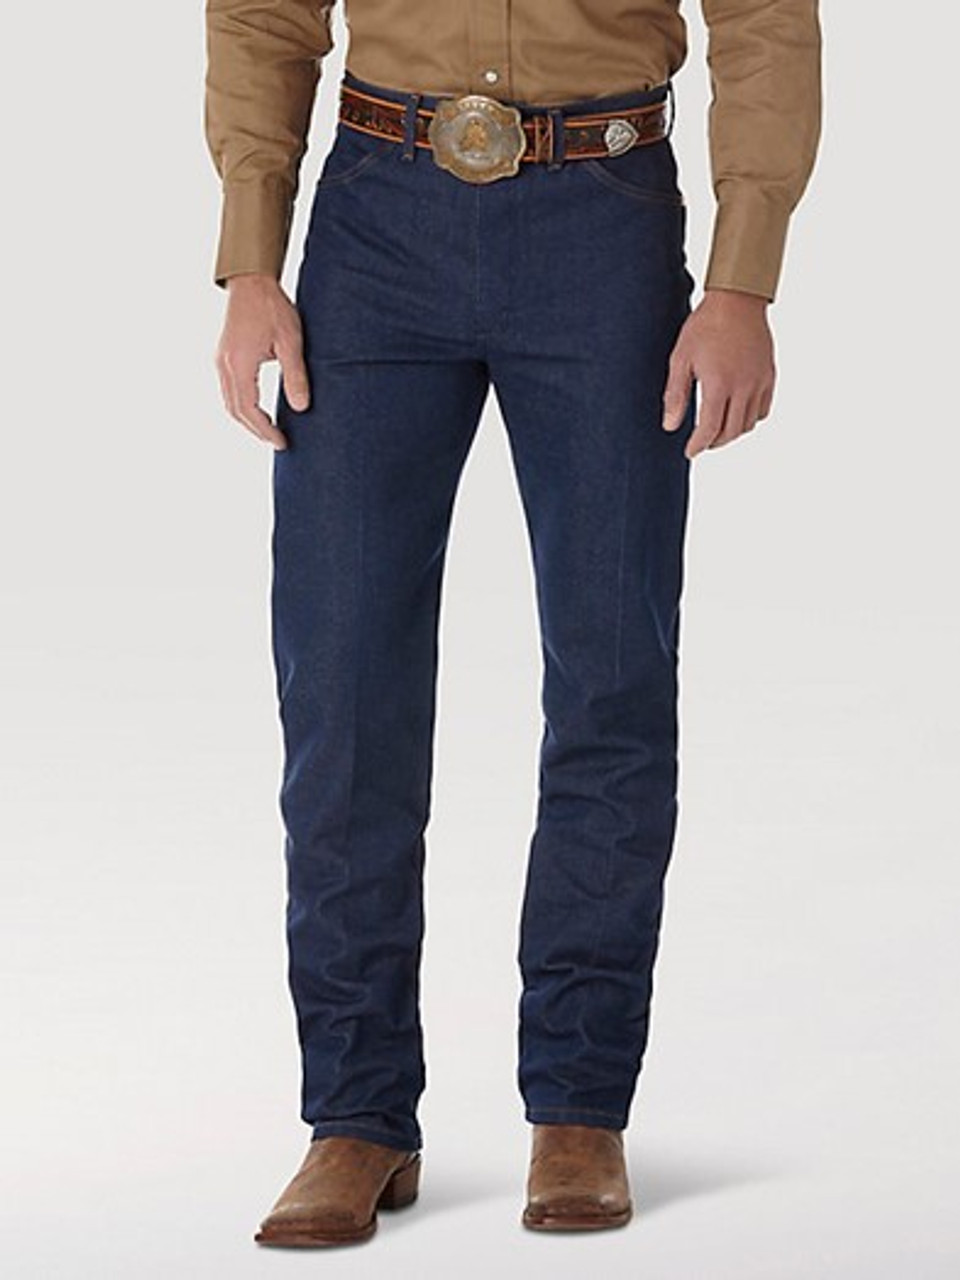 13MWZ Wrangler® Men's Rigid Cowboy Cut® Original Fit Jean